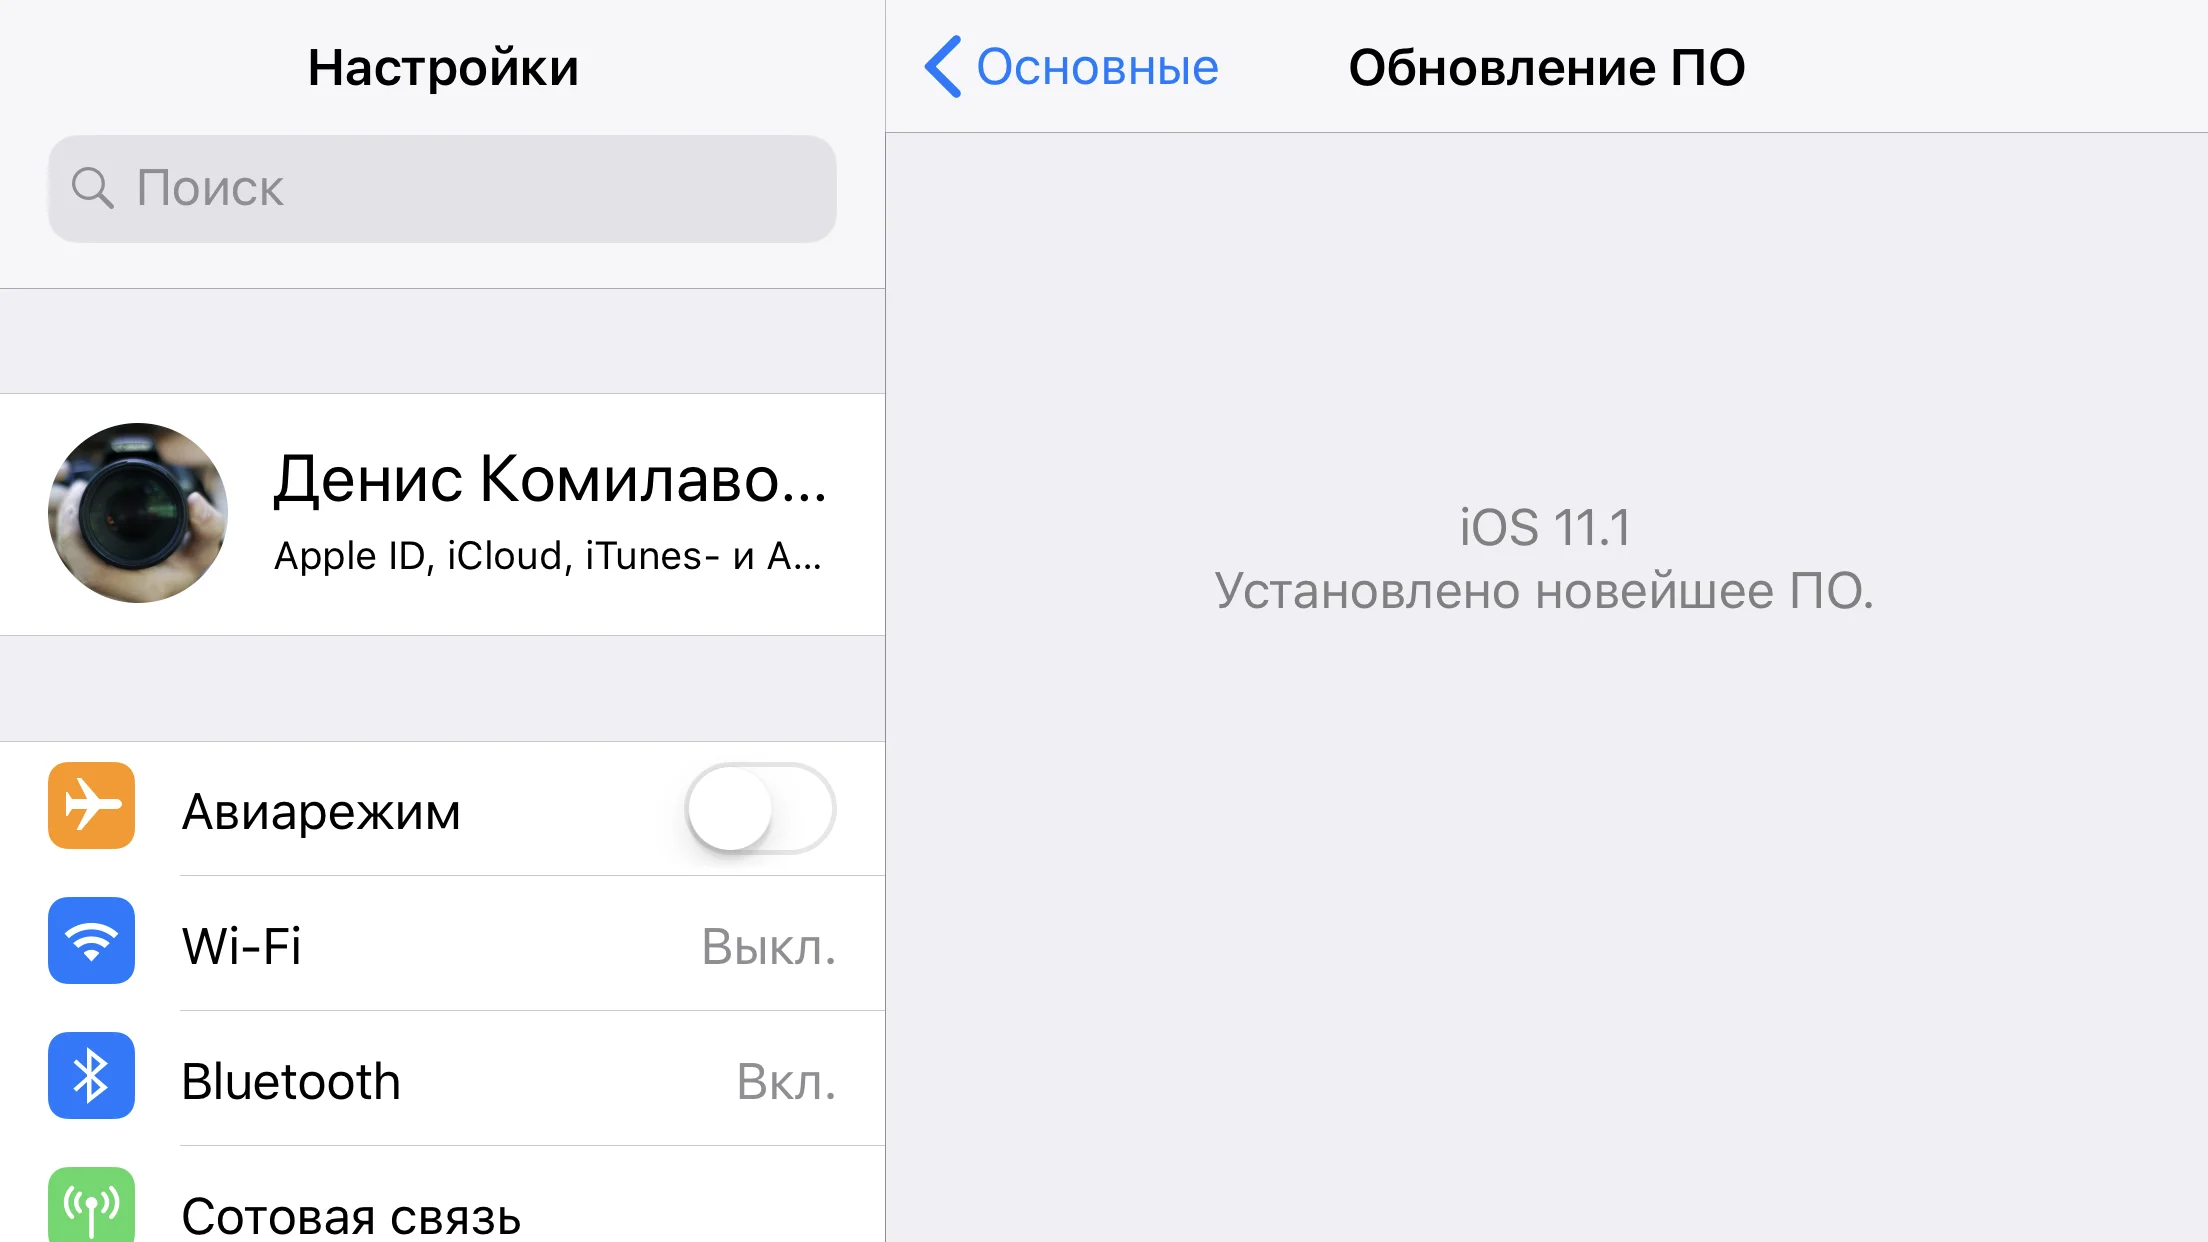 Годно! Apple выпустила финальную iOS 11.1, в которой вернули многозадачность с помощью 3D Touch - фото 1